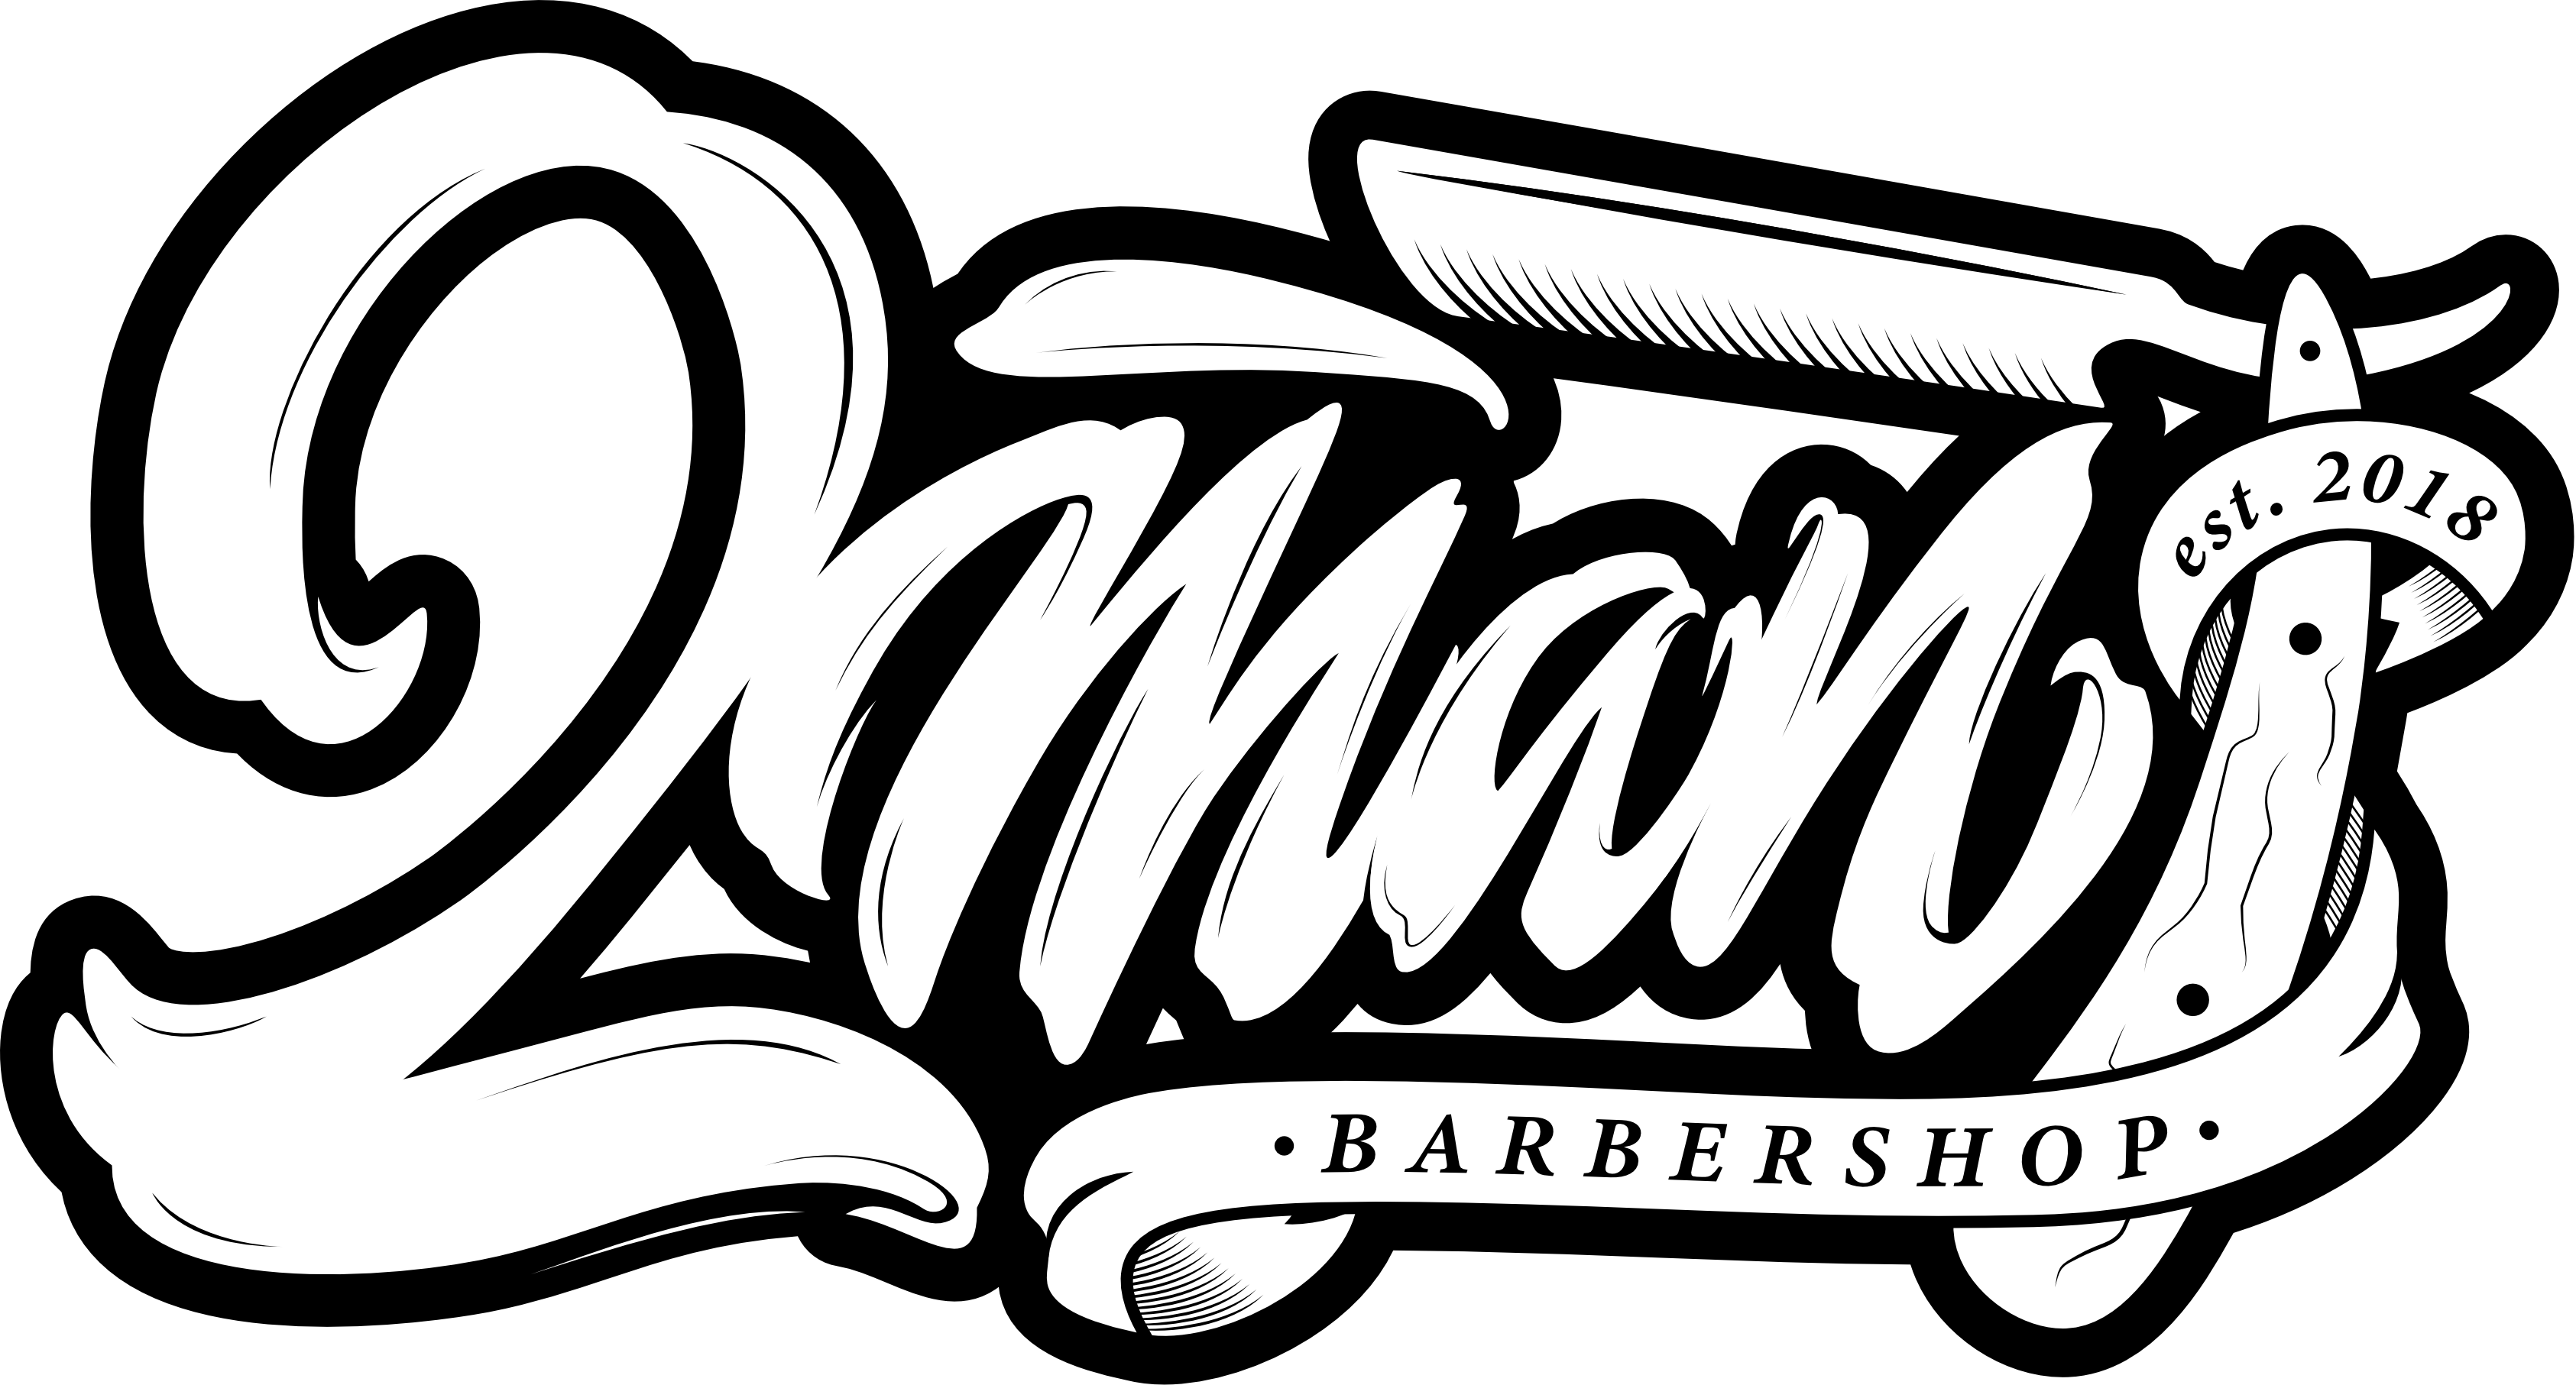 2MAN Barbershop Курсы барбера Оренбург - 2MAN Barbershop | тел. 422-223